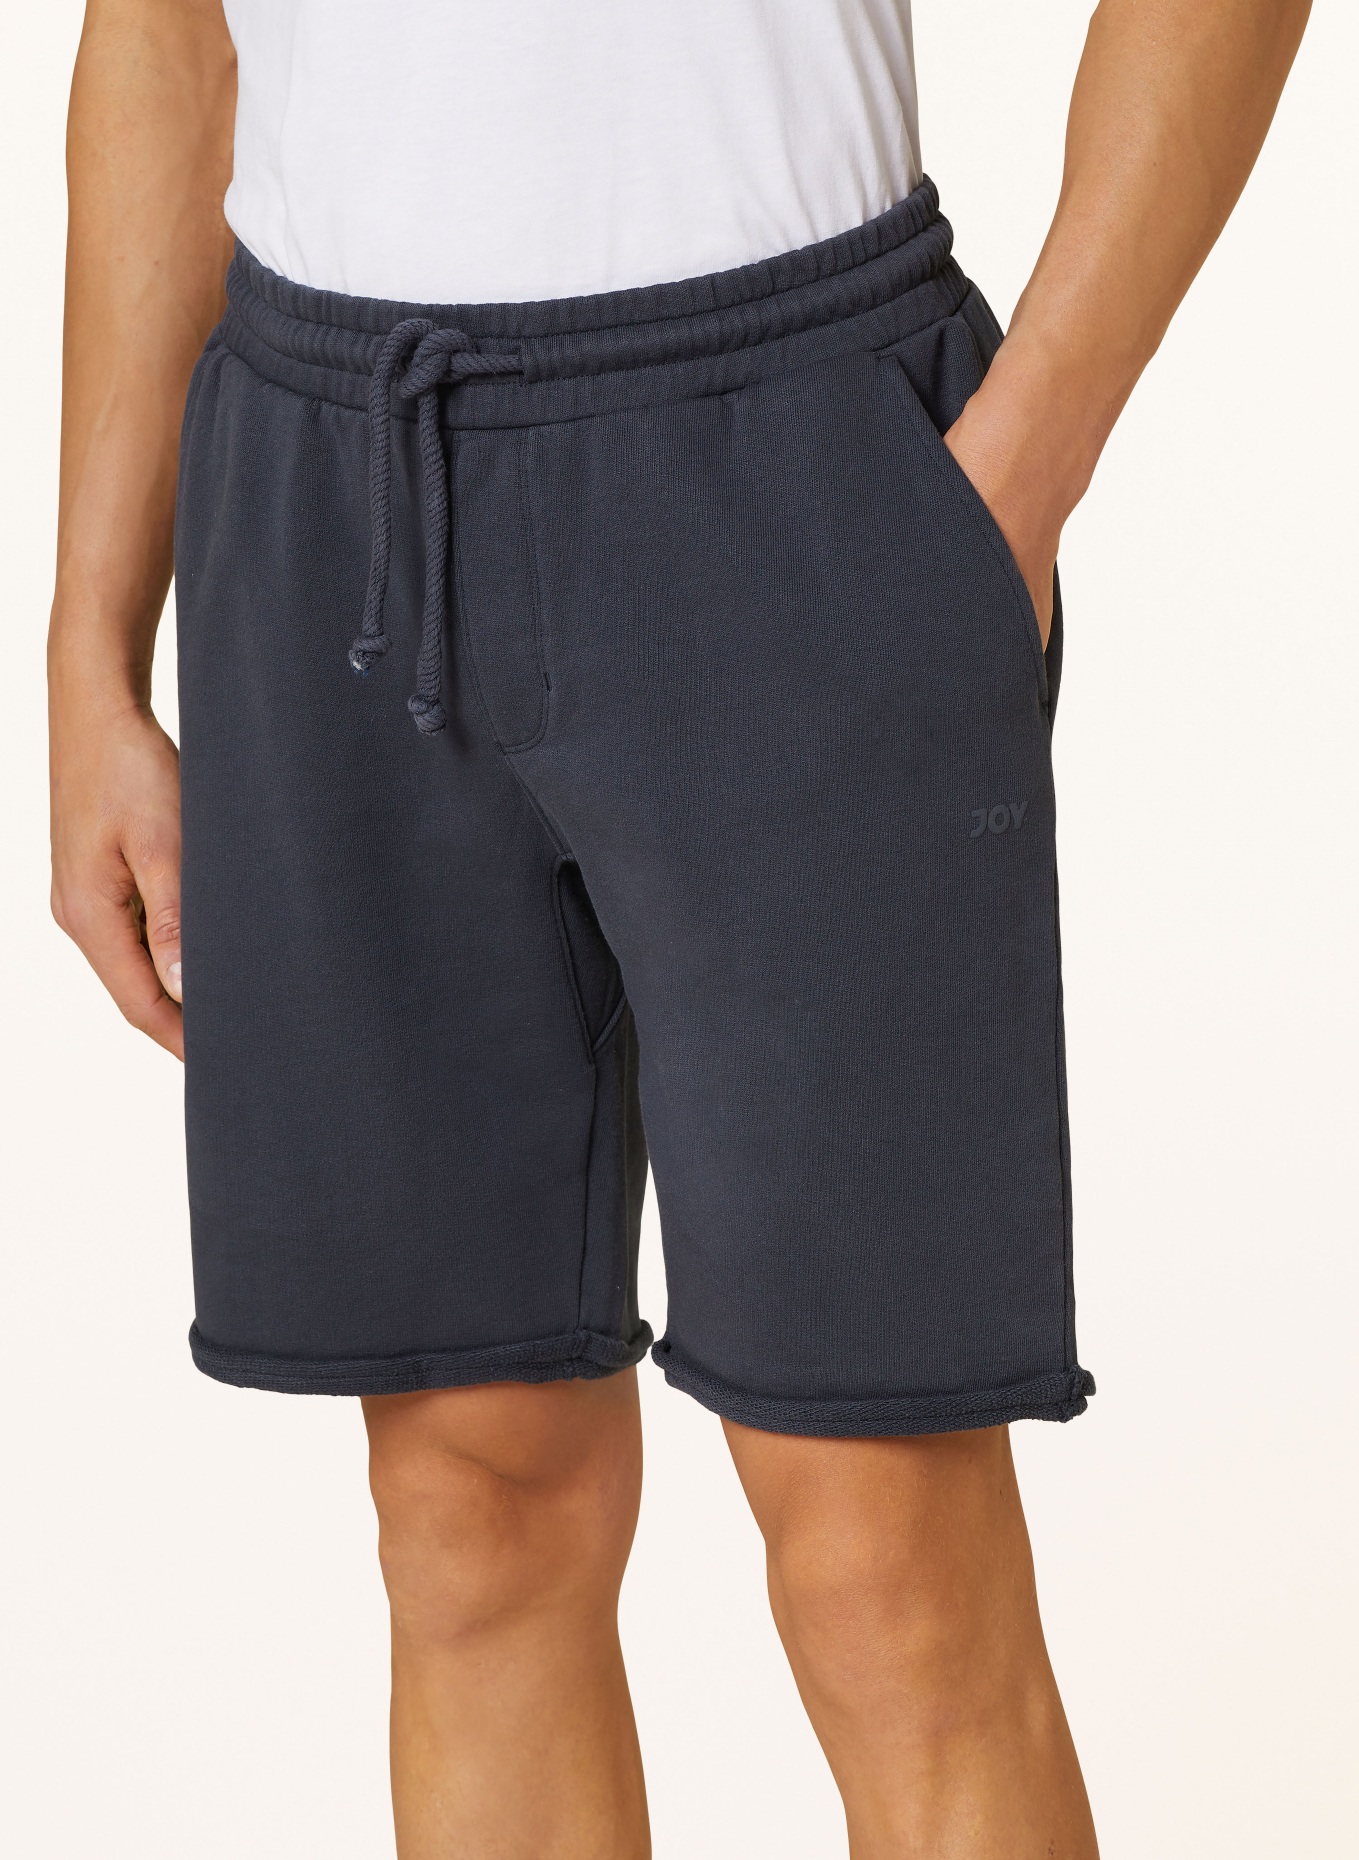 JOY sportswear Sweat shorts, Color: DARK BLUE (Image 6)